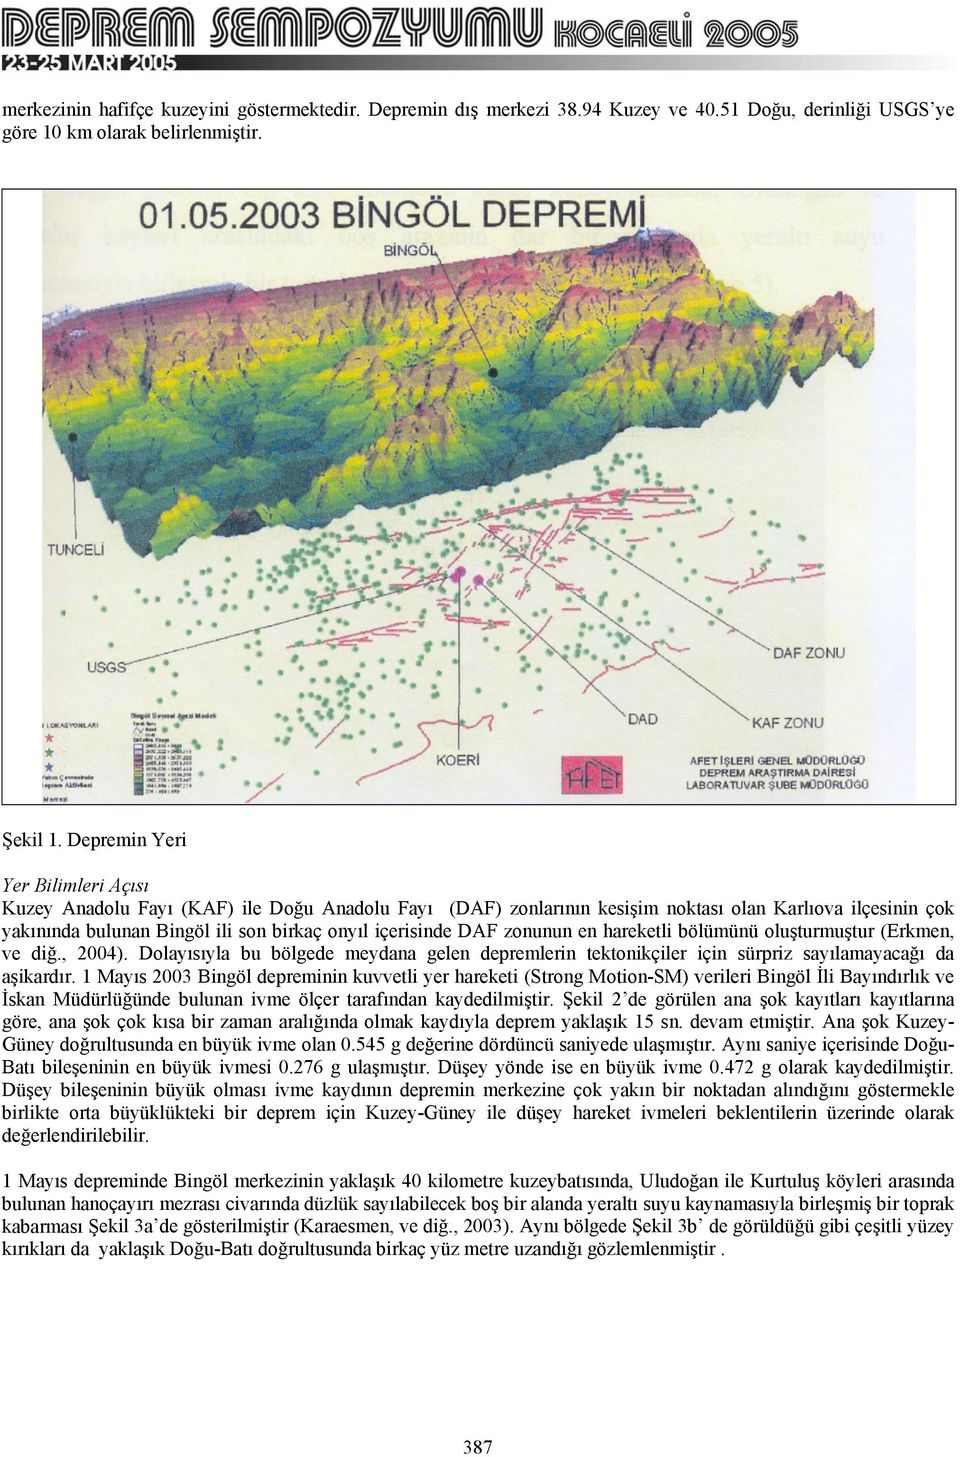 DAF zonunun en hareketli bölümünü oluşturmuştur (Erkmen, ve diğ., 2004). Dolayısıyla bu bölgede meydana gelen depremlerin tektonikçiler için sürpriz sayılamayacağı da aşikardır.